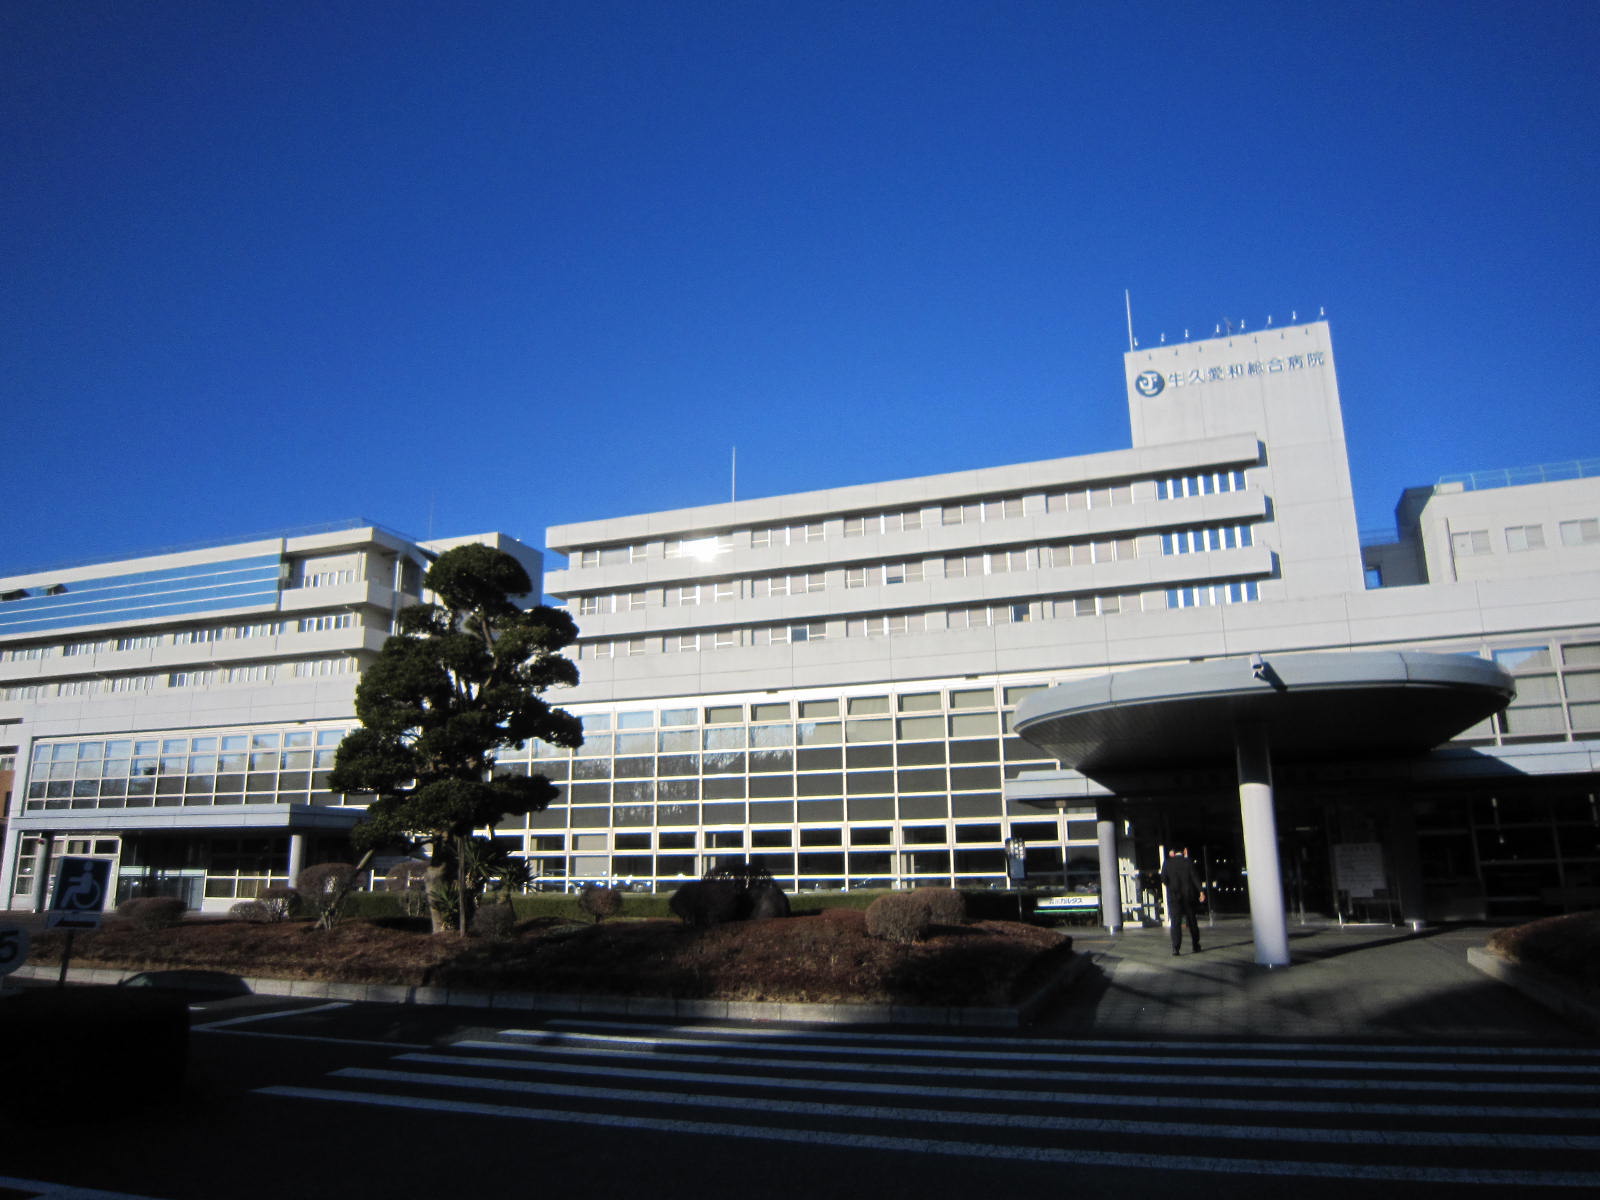 Hospital. Ushikuaiwasogobyoin until the (hospital) 2714m